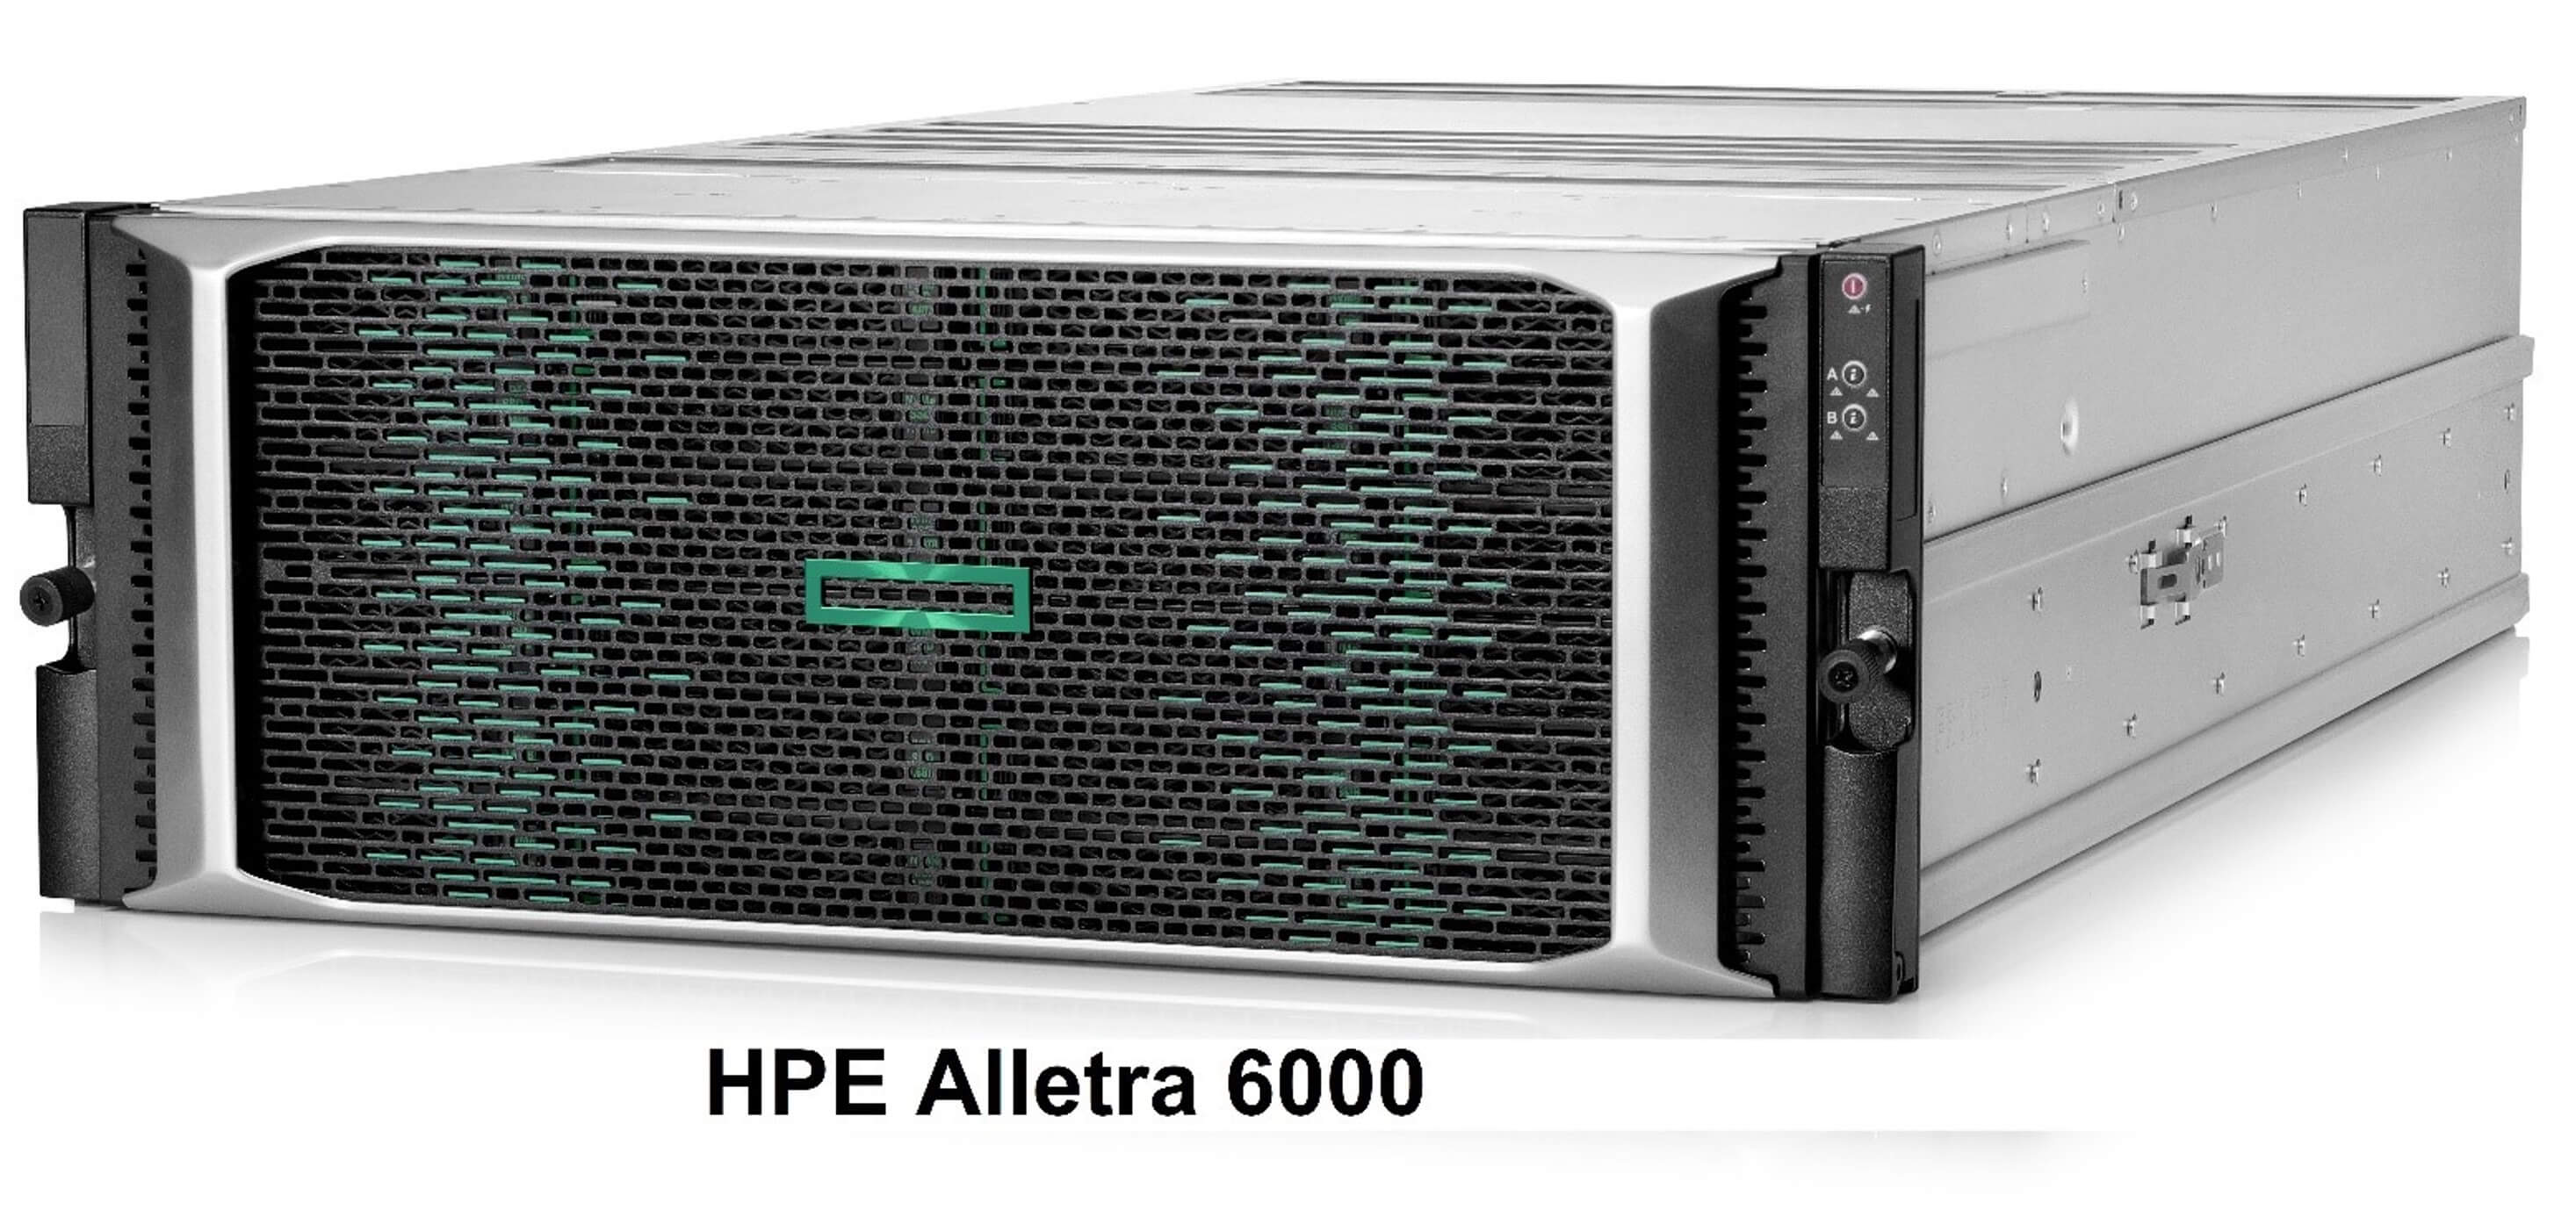 HPE Alletra 6000 - високонадійна система з ефективним зберіганням та безпечним хмарним управлінням з будь-якої точки світу